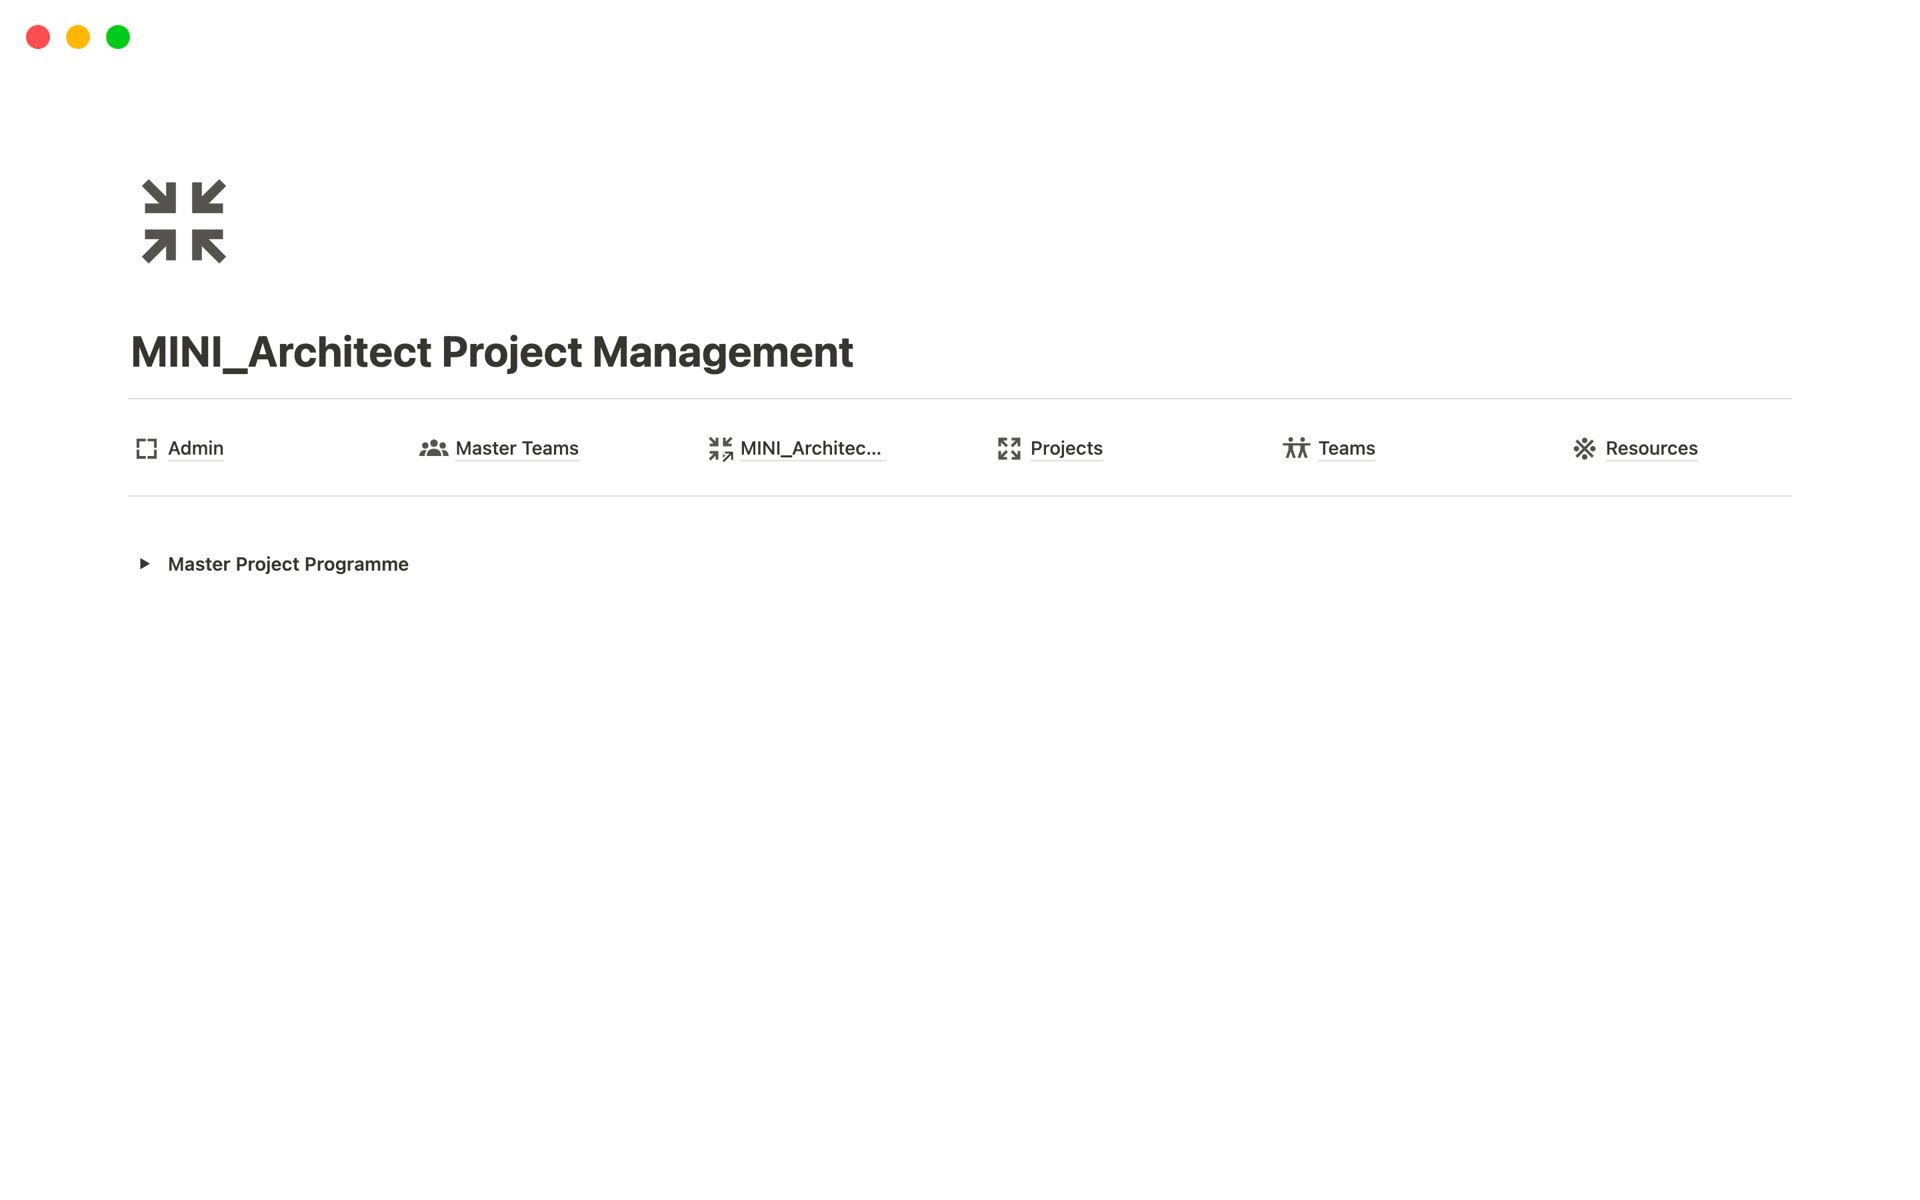 Vista previa de una plantilla para MINI_Architect Project Management